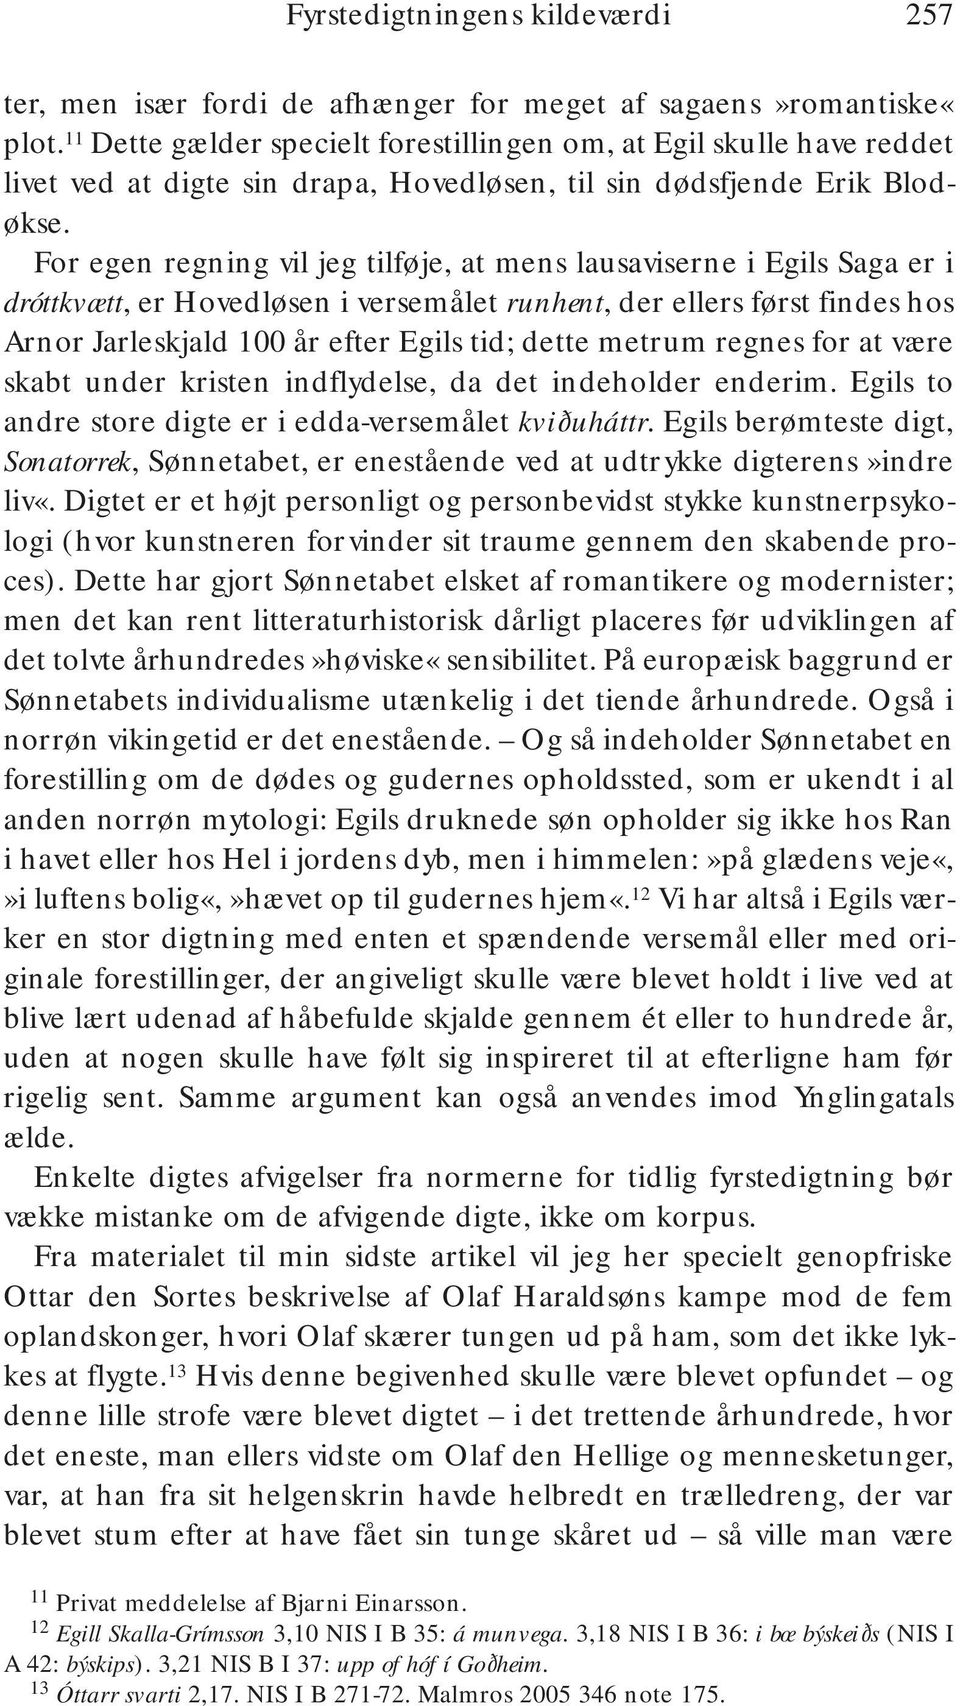 For egen regning vil jeg tilføje, at mens lausaviserne i Egils Saga er i dróttkvætt, er Hovedløsen i versemålet runhent, der ellers først findes hos Arnor Jarleskjald 100 år efter Egils tid; dette